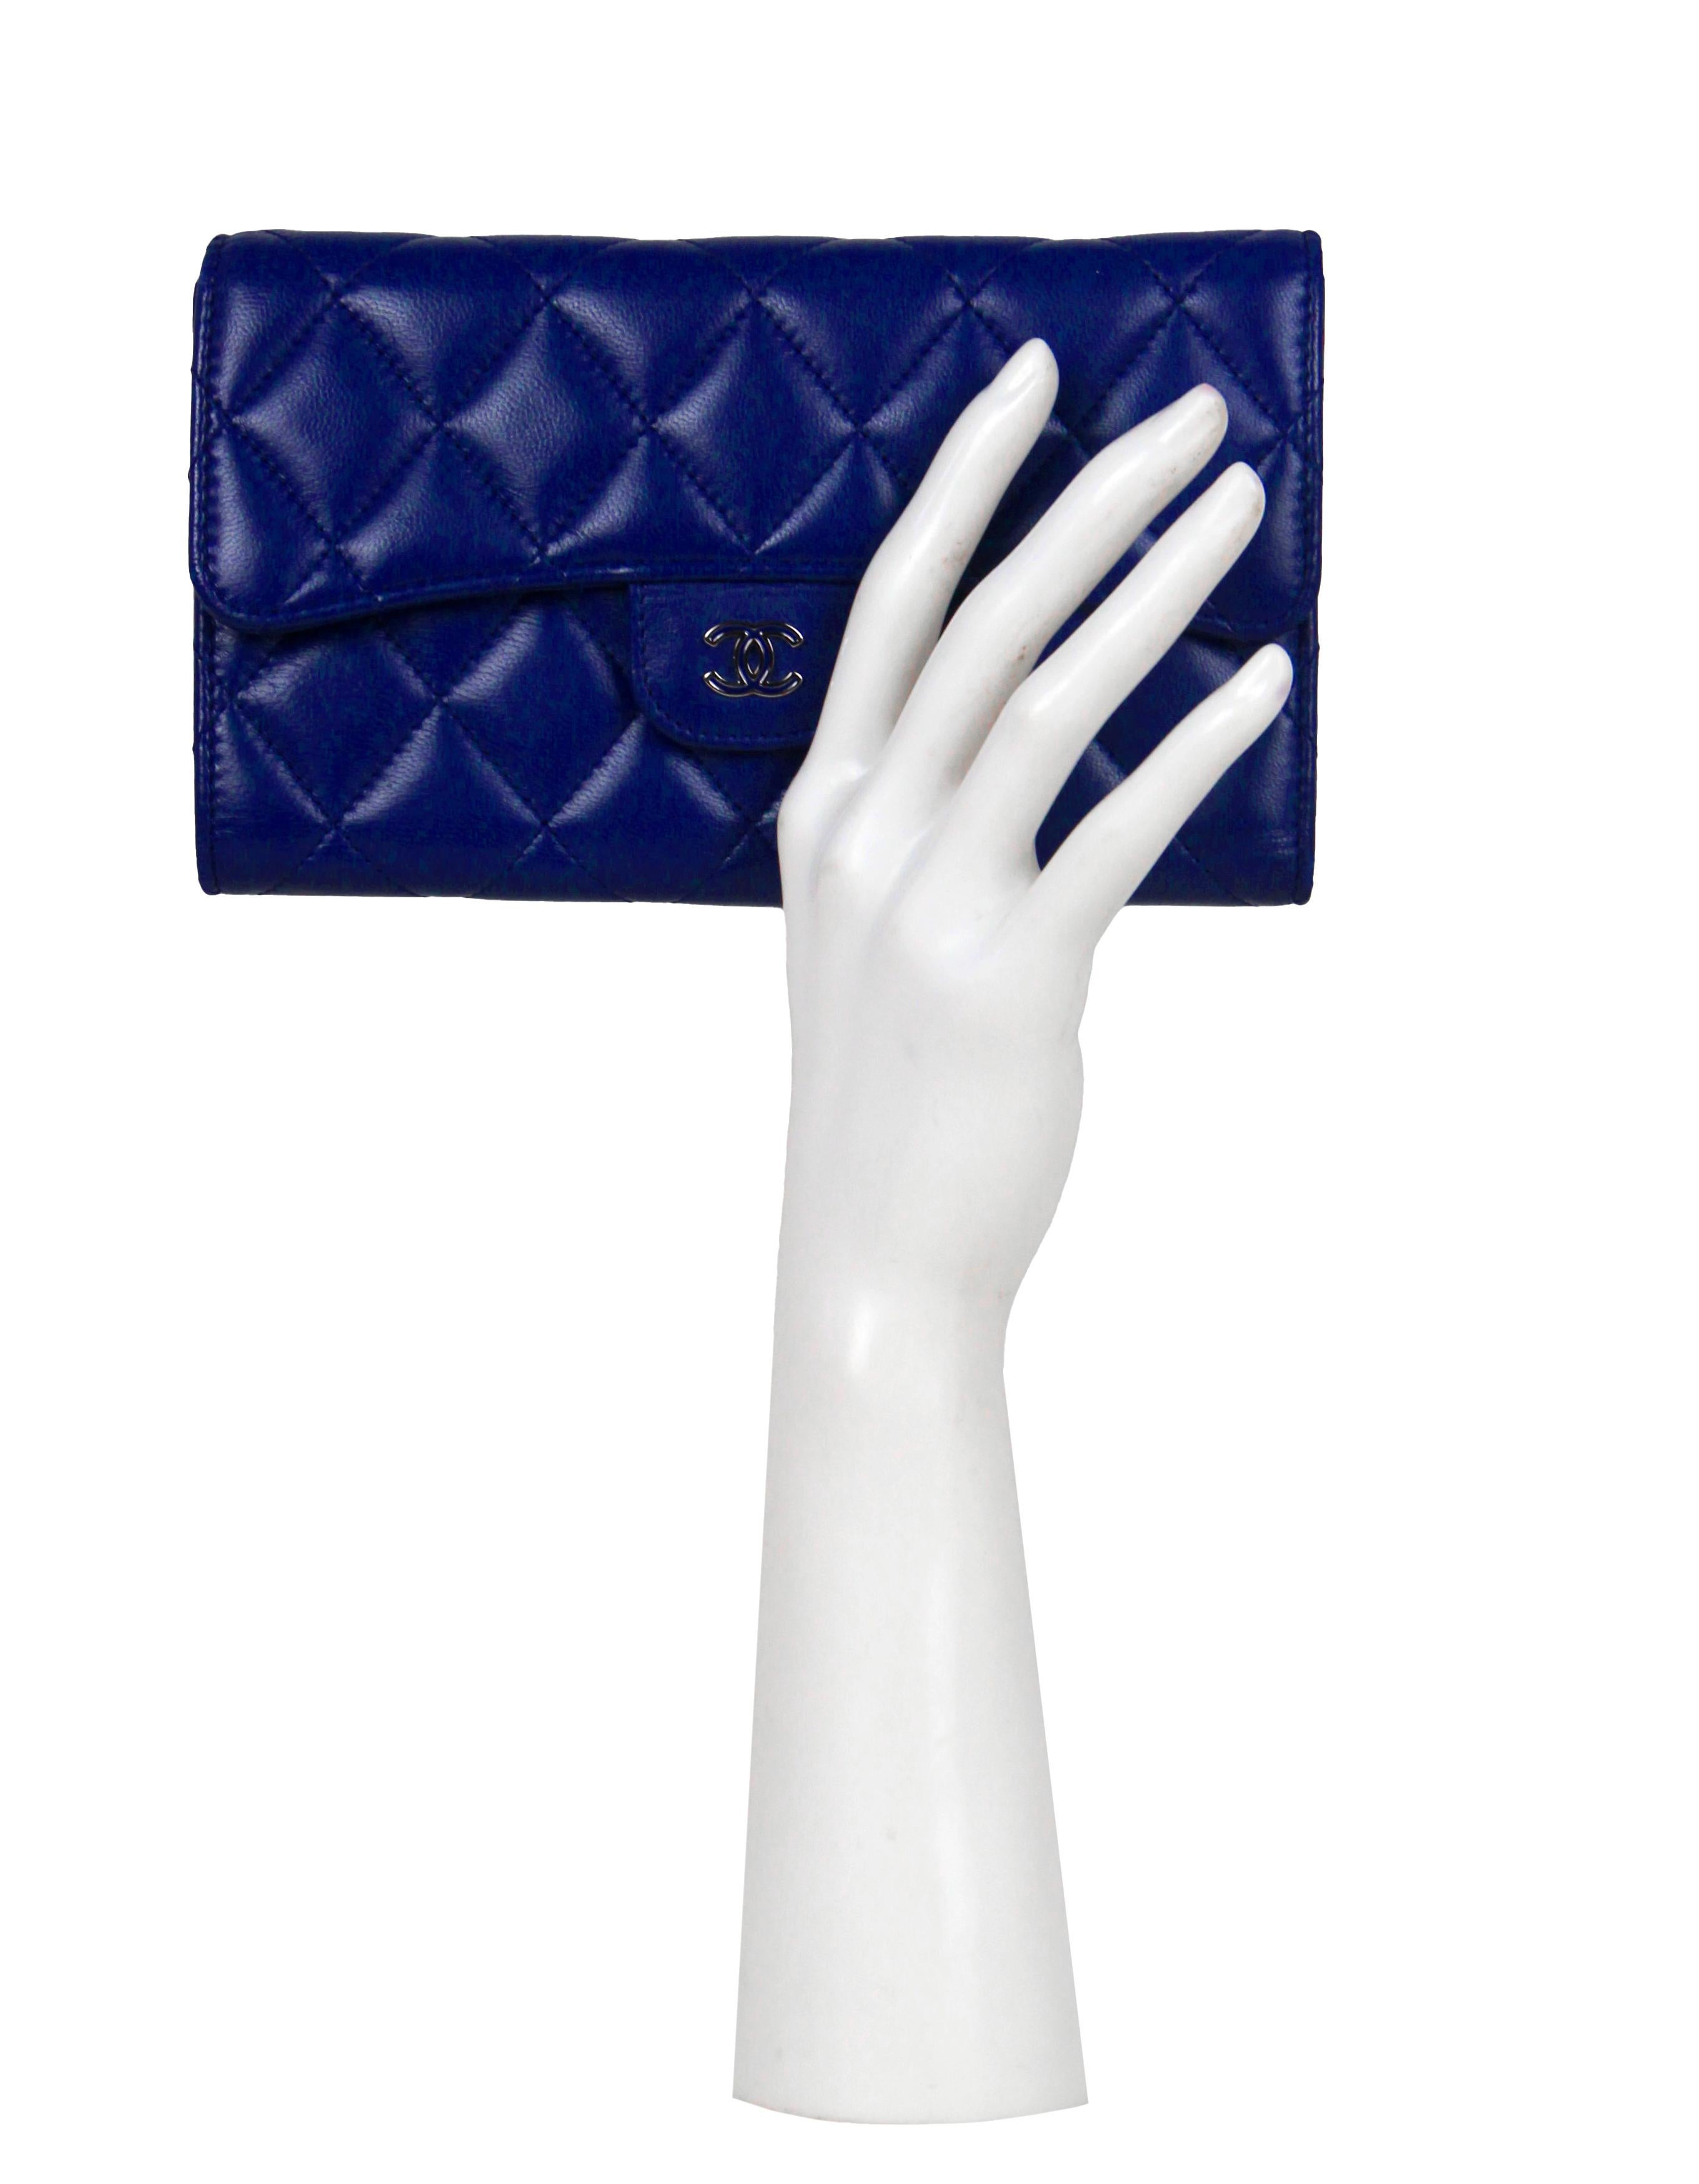 Chanel Blau Lammfell gesteppt große Klappe Brieftasche

Hergestellt in: Spanien
Produktionsjahr: 2014-2014
Farbe: Blau
Beschläge: Silberfarben und blaue Emaille
Materialien: Lammfell Leder
Innenfutter: Glattleder
Verschluss/Öffnung: Klappe mit